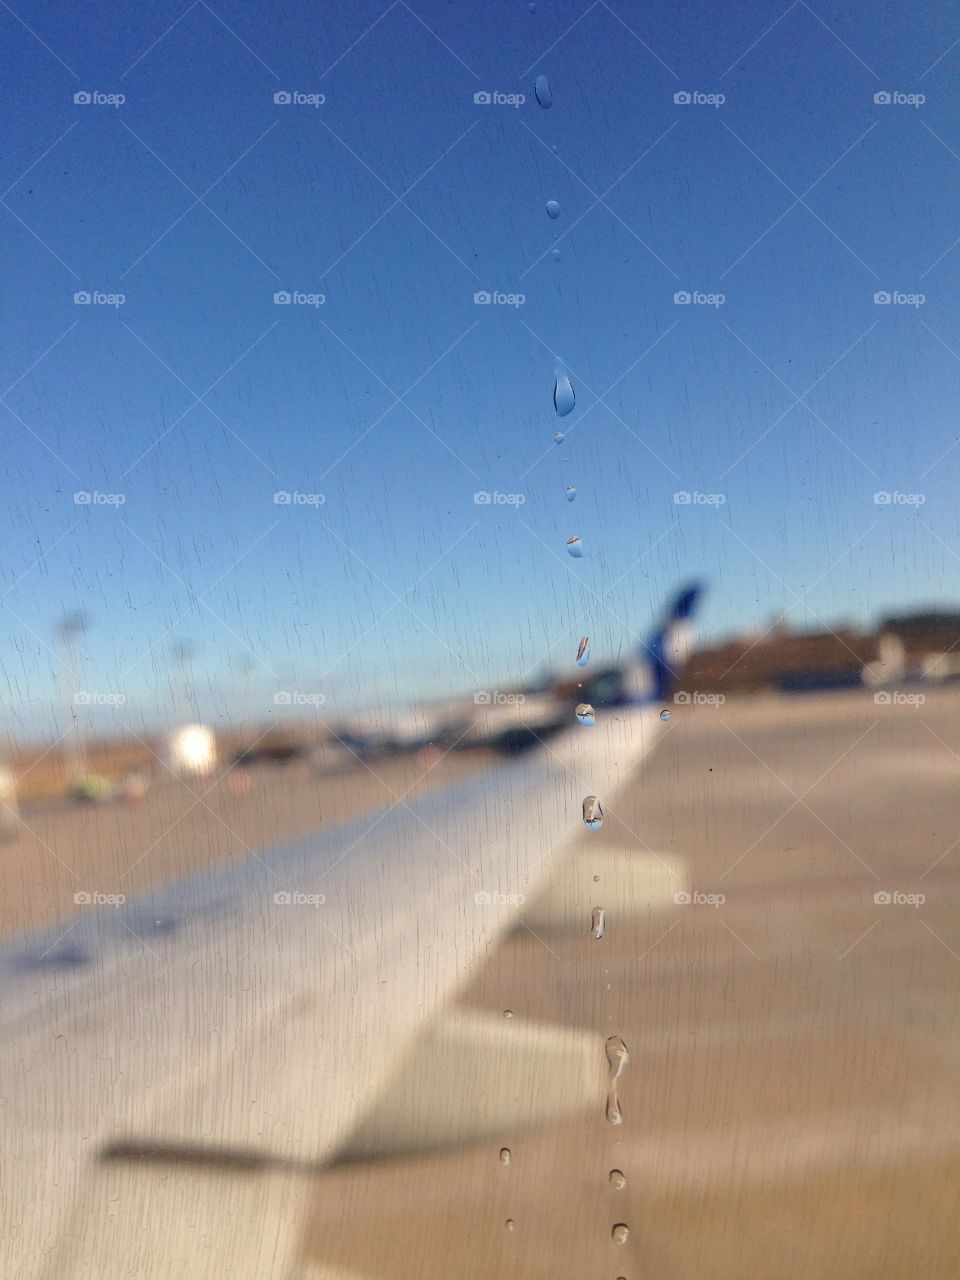 Gota d'agua sob a janela do avião.